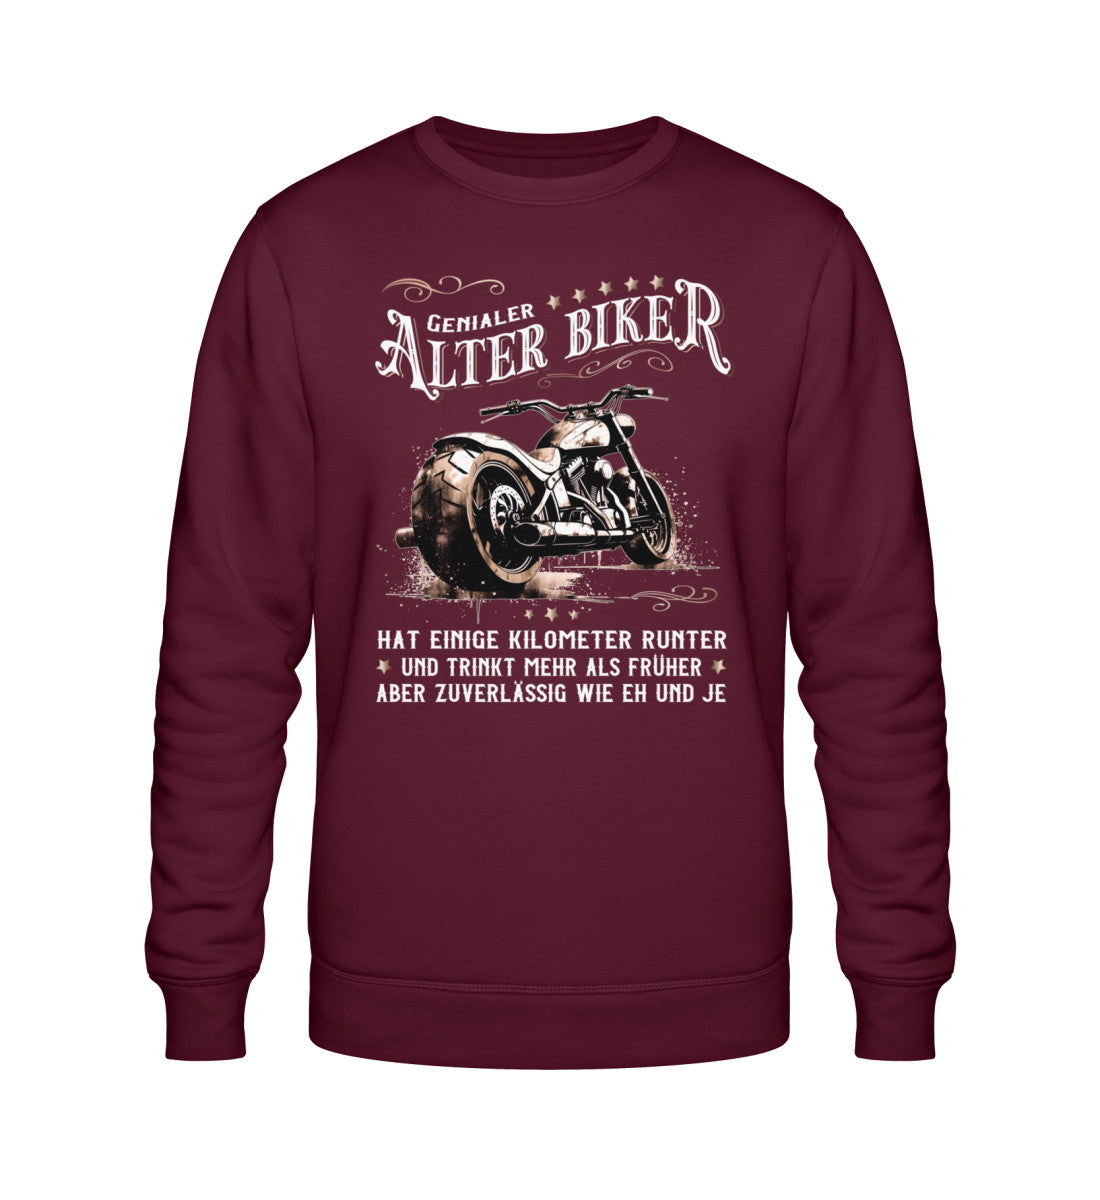 Ein Biker Sweatshirt für Motorradfahrer von Wingbikers mit dem Aufdruck, Alter Biker - Einige Kilometer runter, trinkt mehr - aber zuverlässig wie eh und je - in burgunder weinrot.